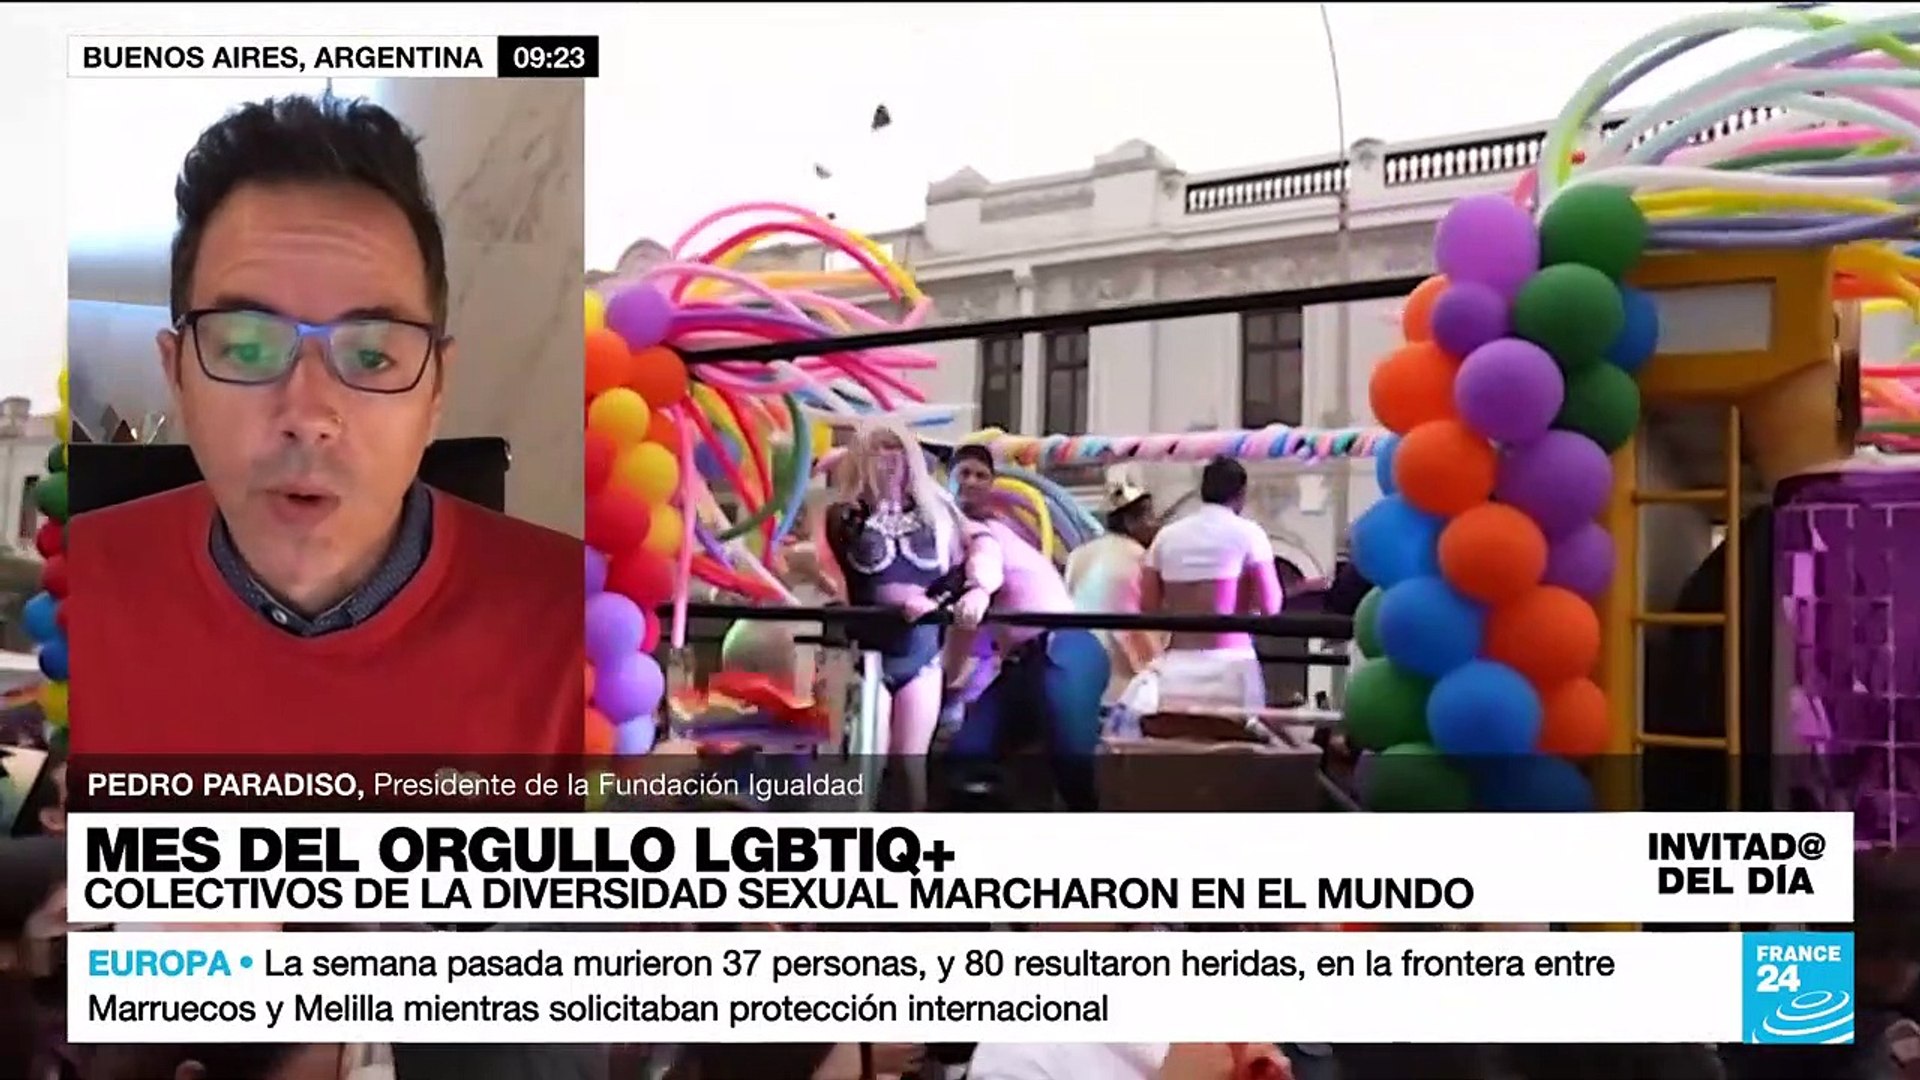 ¿Cuáles son los logros más recientes de la comunidad LGBTIQ+ en América Latina?